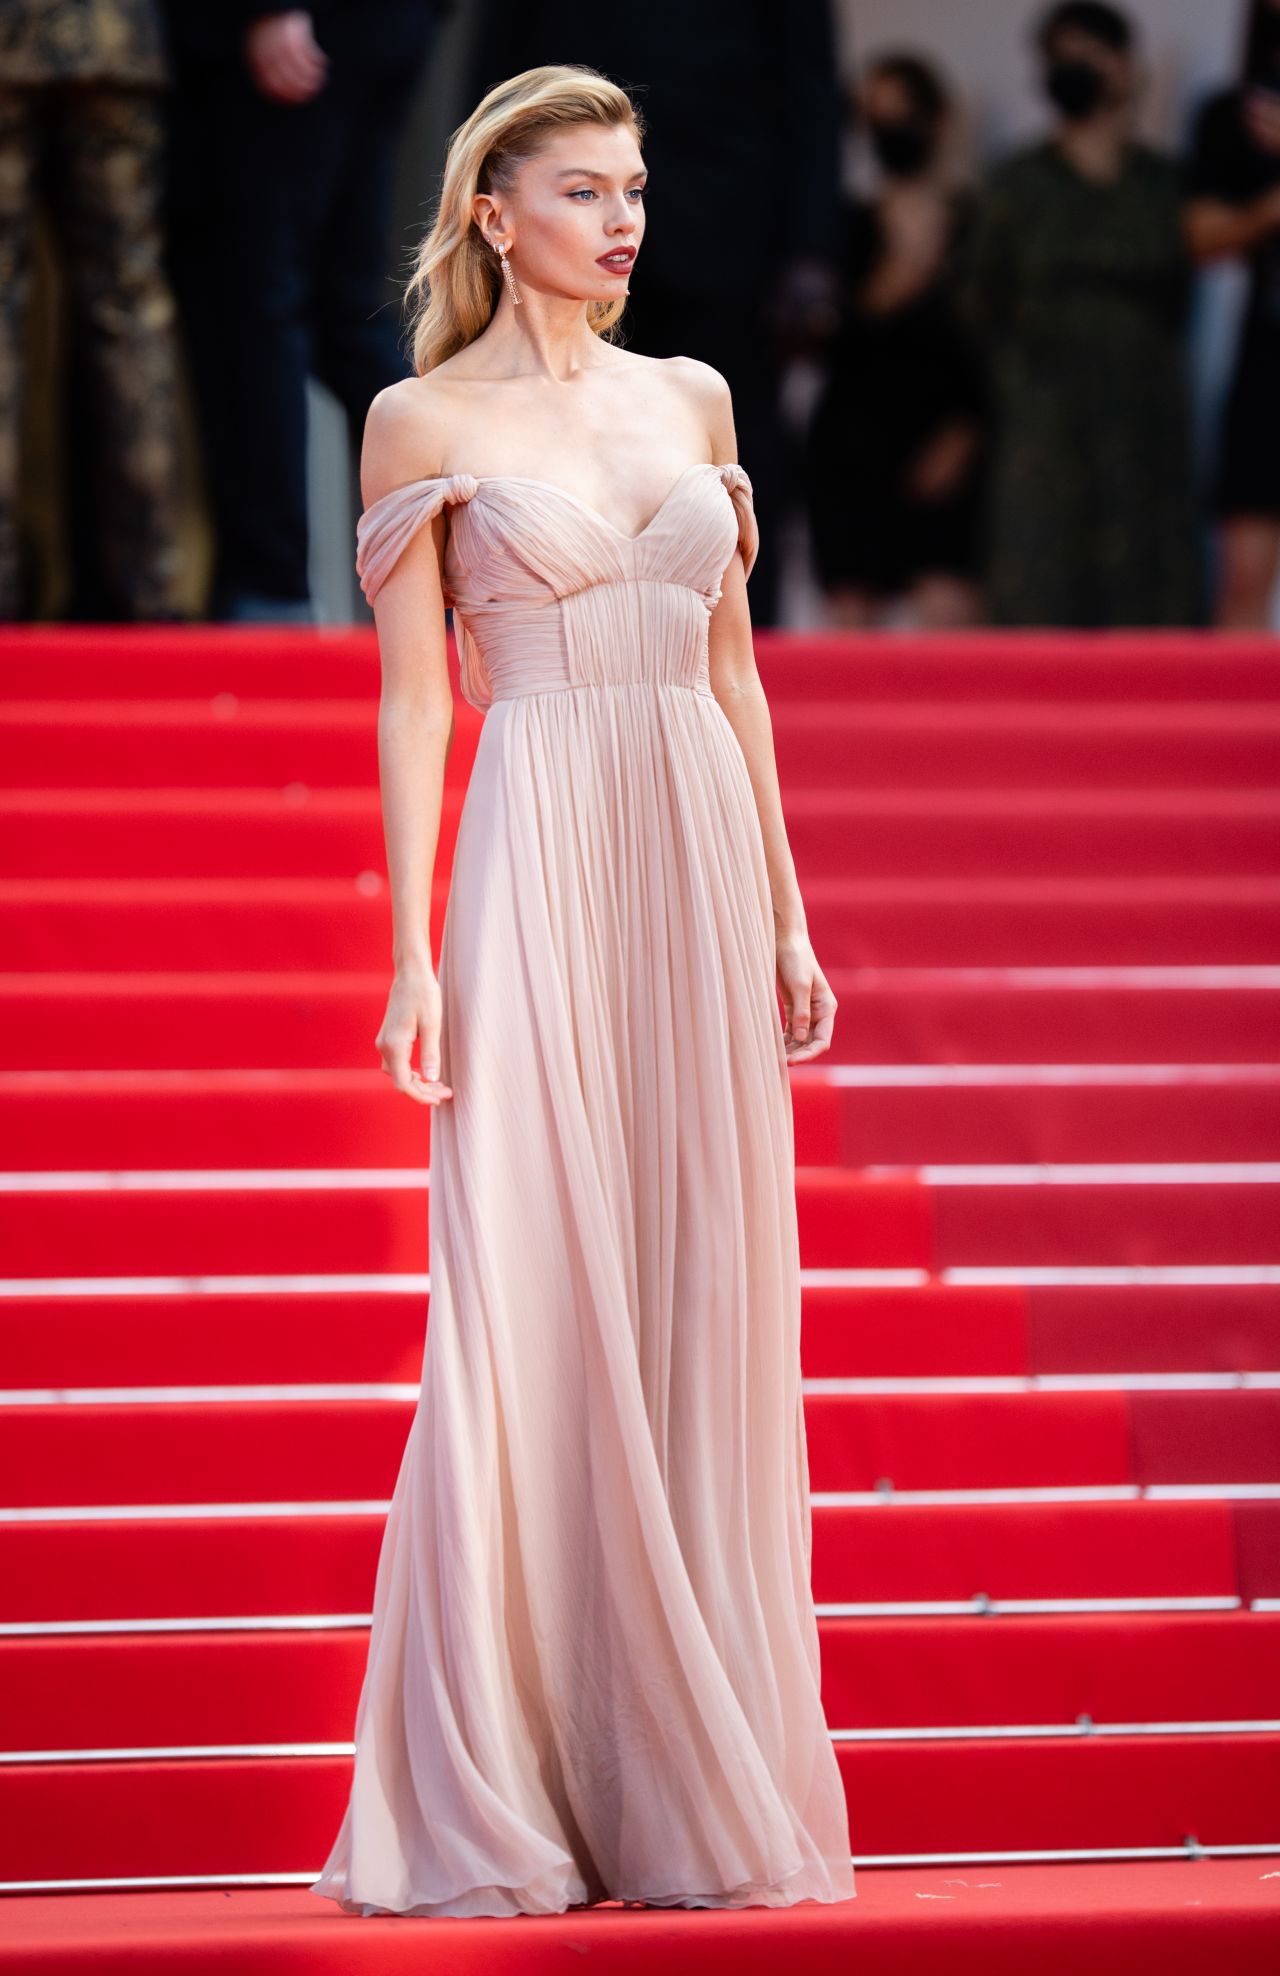 Model Stella Maxwell wore a nude Alberta Ferretti gown.